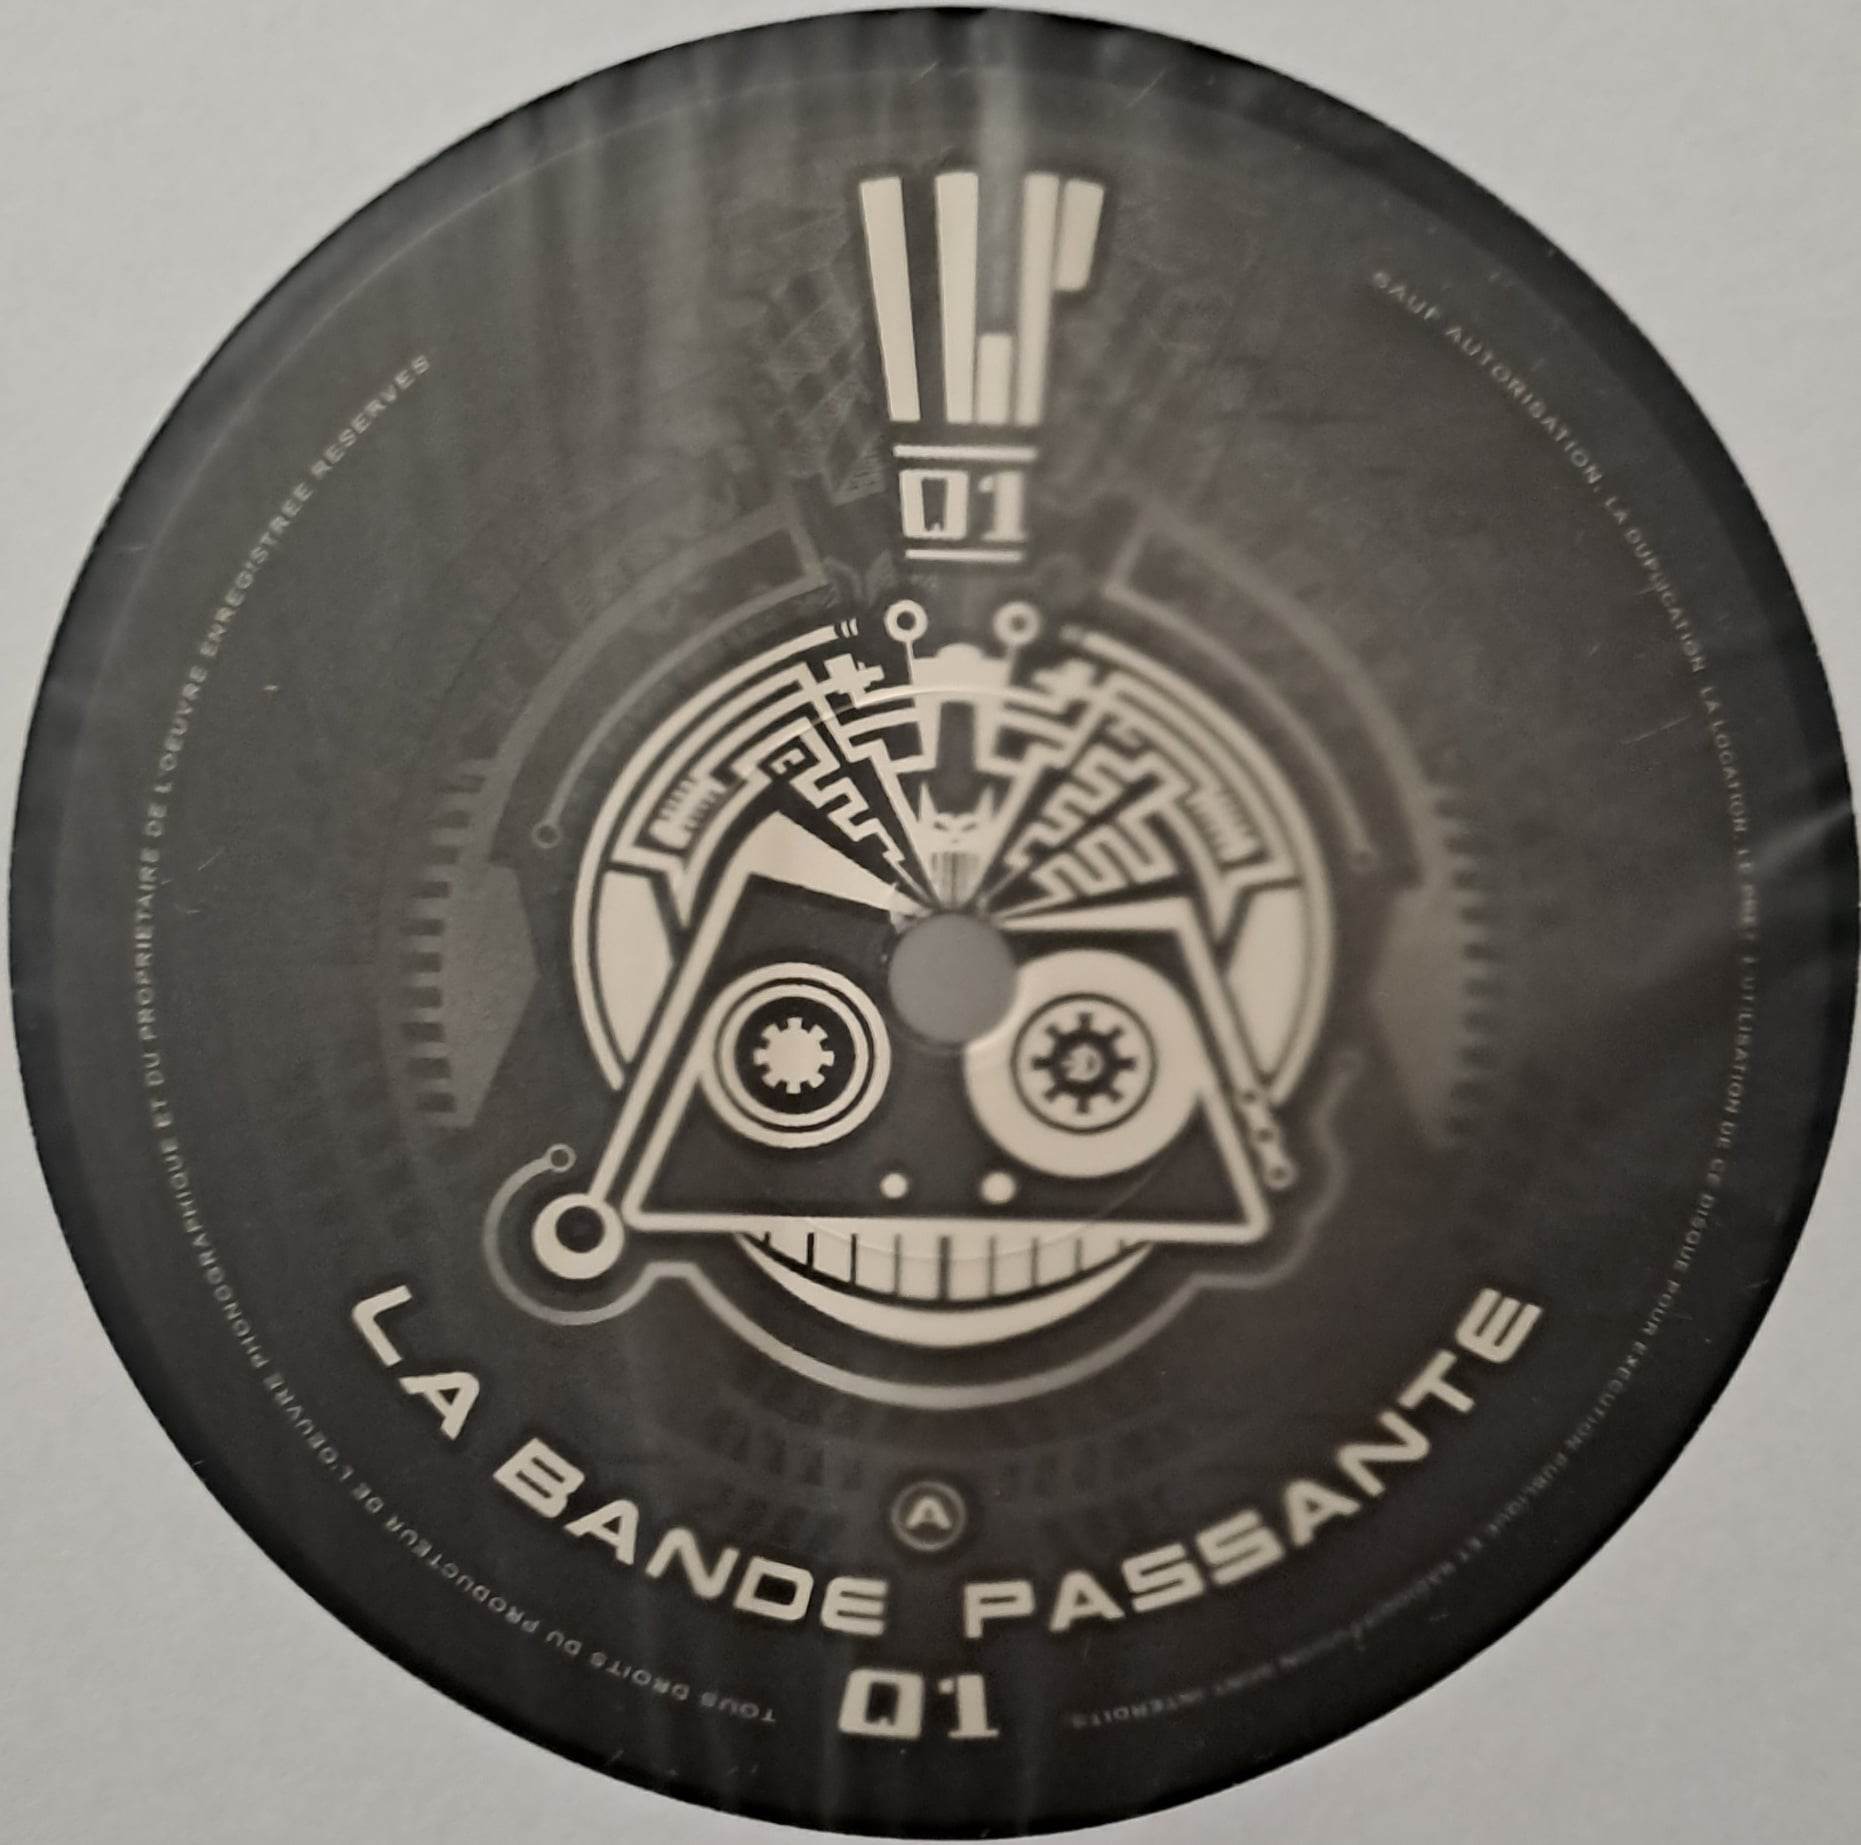 La Bande Passante 01 (toute dernière copie en stock) - vinyle freetekno